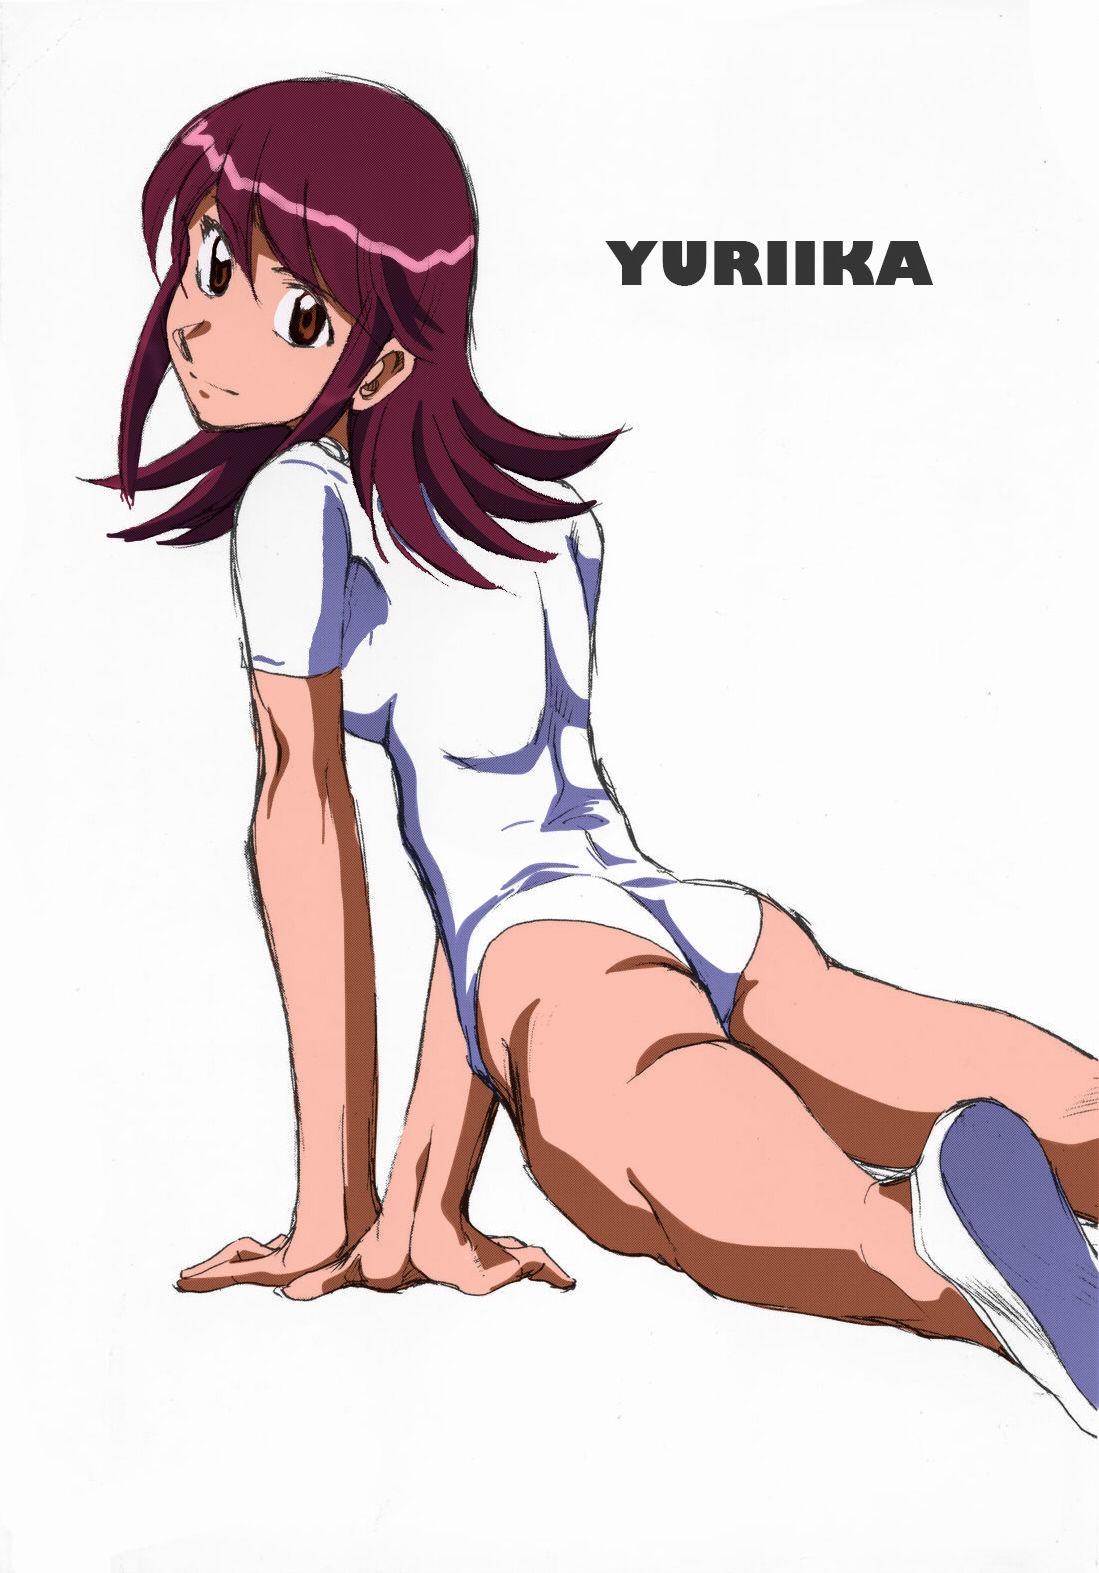 Yuriika. 26